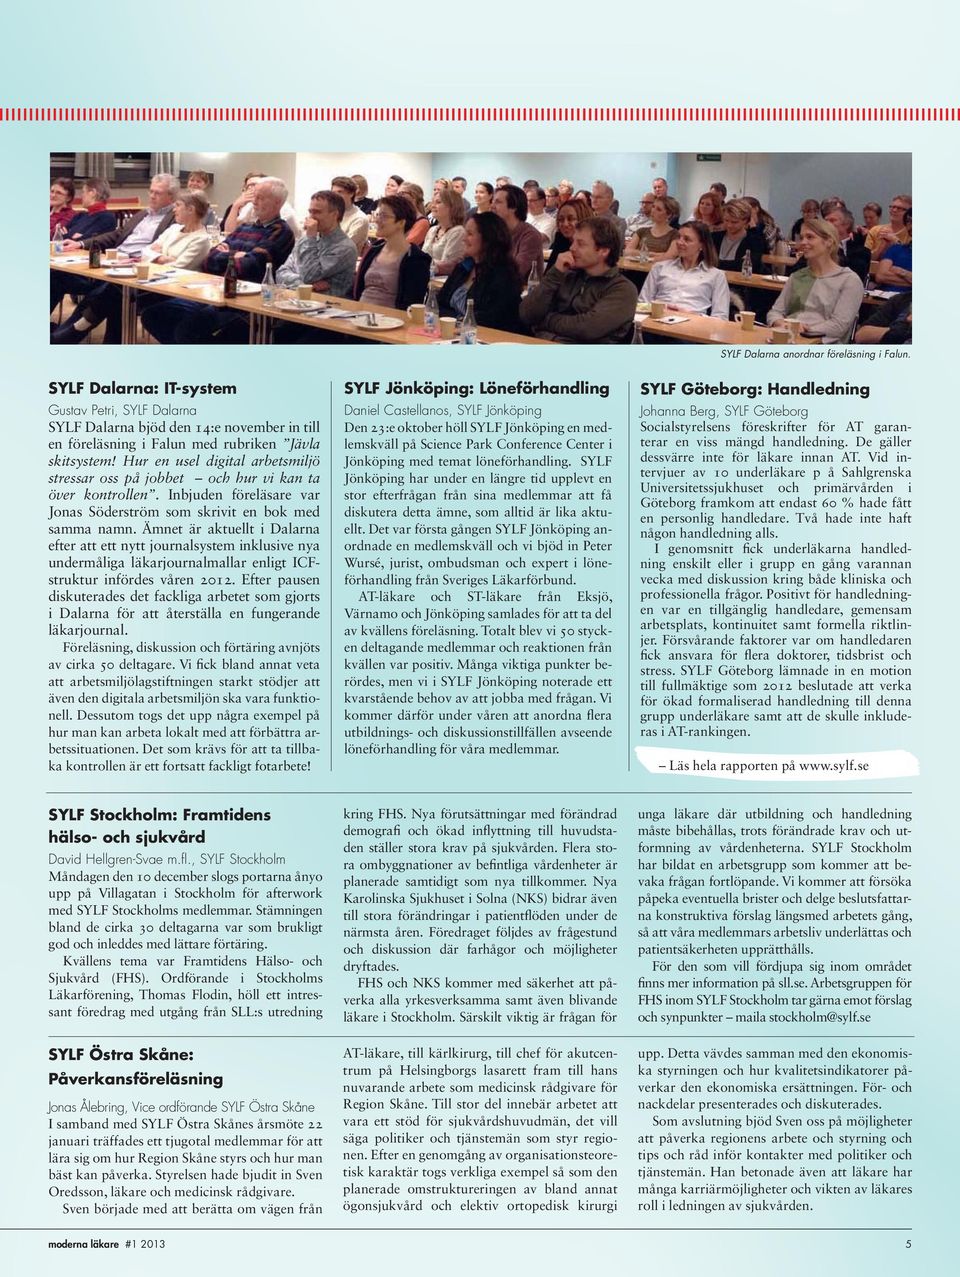 Ämnet är aktuellt i Dalarna efter att ett nytt journalsystem inklusive nya undermåliga läkarjournalmallar enligt ICFstruktur infördes våren 2012.